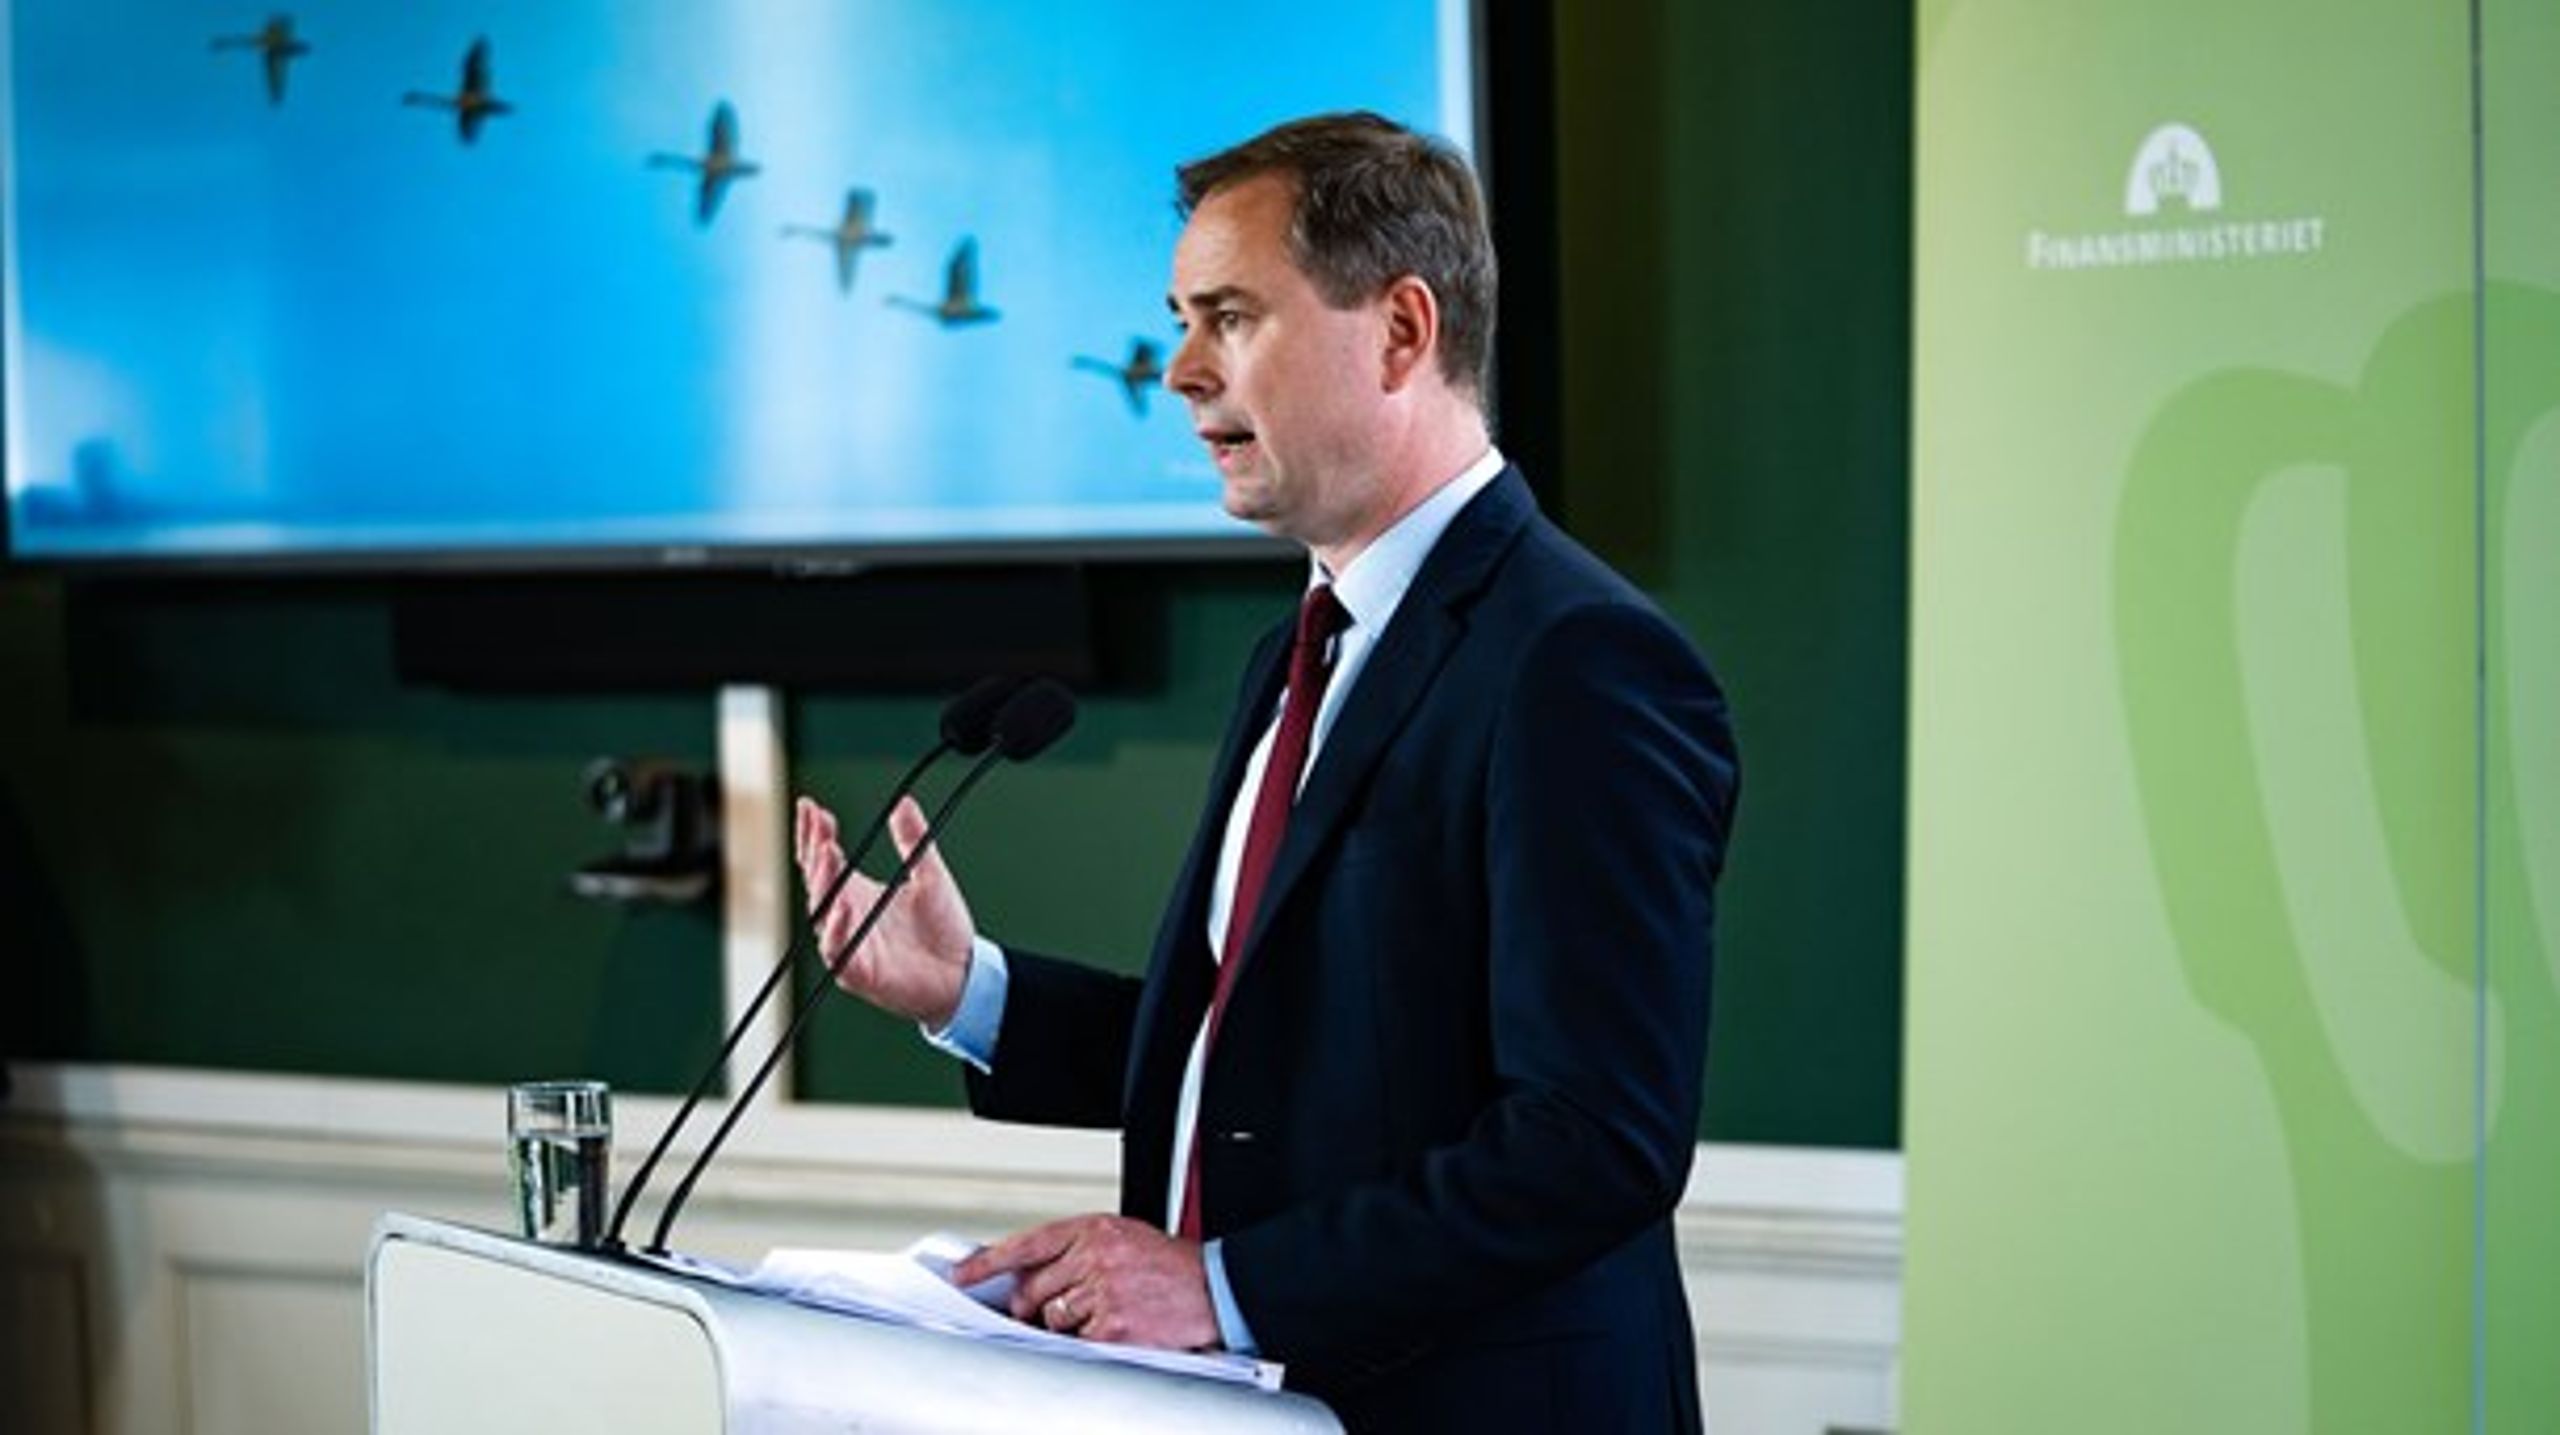 Finansminister Nicolai Wammen præsenterer regeringens udspil til en finanslov for 2021.